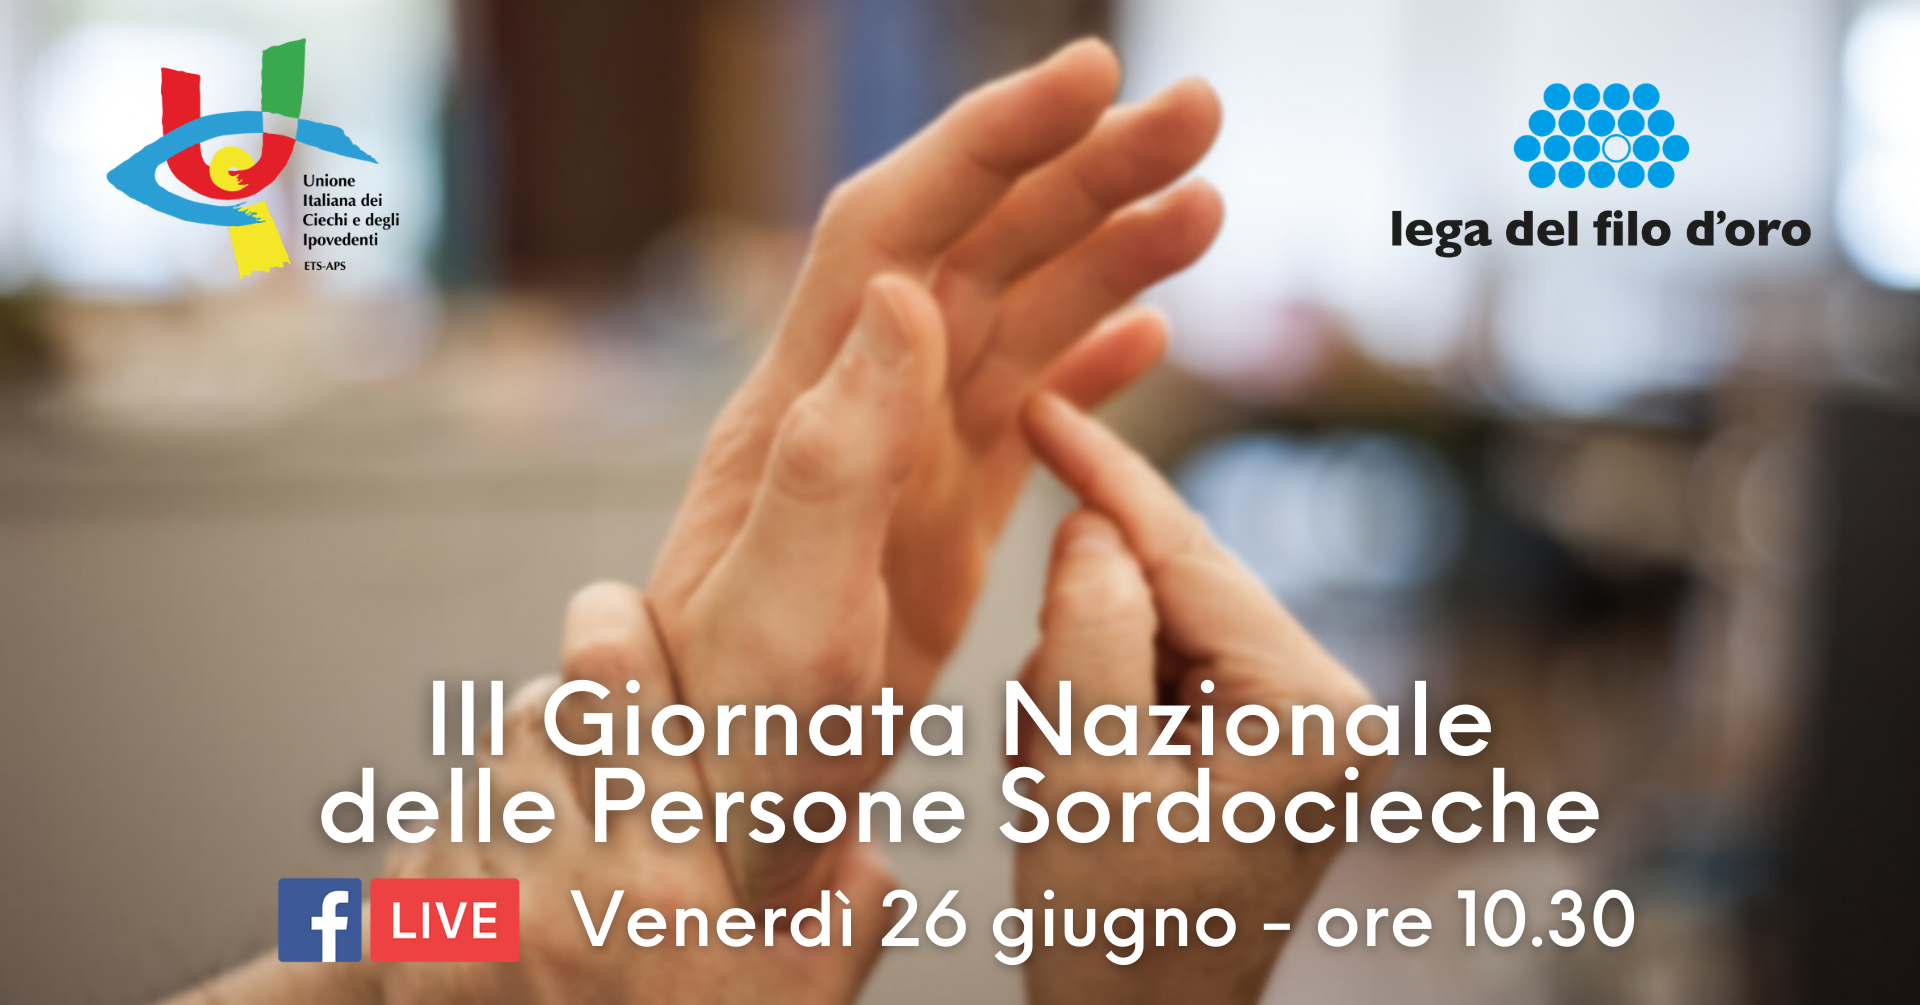 Cover evento Giornata Nazionale delle Persone Sordocieche 2020 in collaborazione con UIC